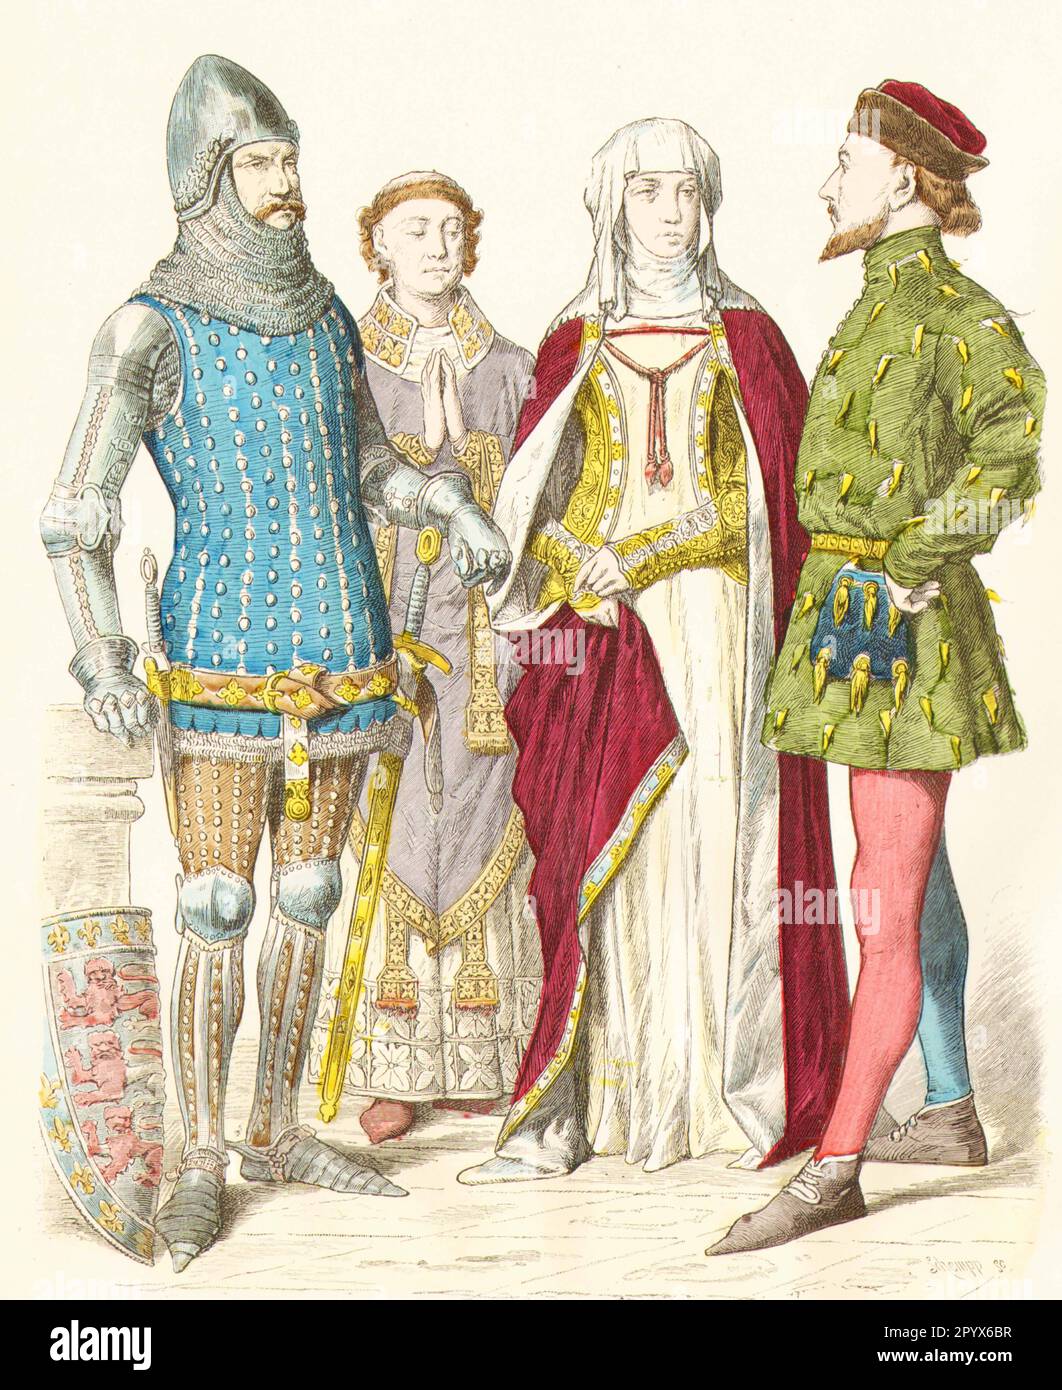 Englischer Ritter, edle Frau und Burger in zeitgenössischer Kleidung, ca. 1350. [Automatisierte Übersetzung] Stockfoto